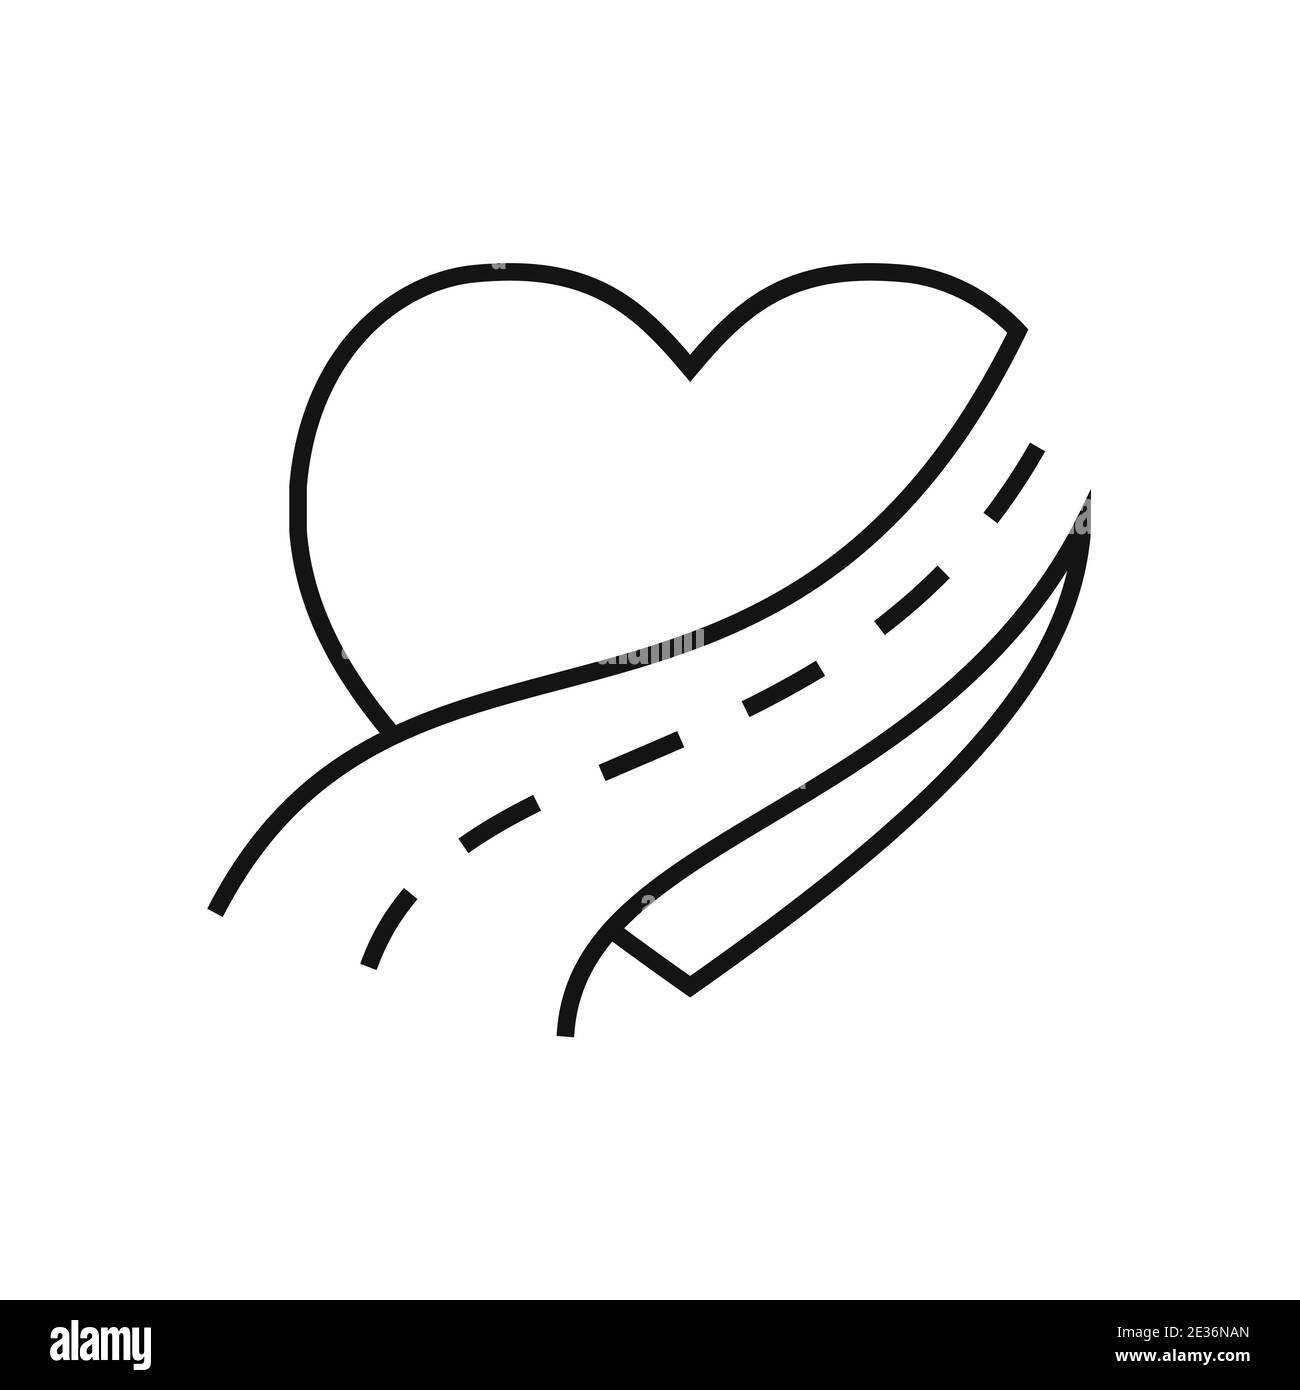 Herz-Symbol mit Straßen-Symbol. Vektorgrafik. Abstrakte konzeptuelle Ikone der Liebe. Herzform in flacher, linearer Form Stock Vektor